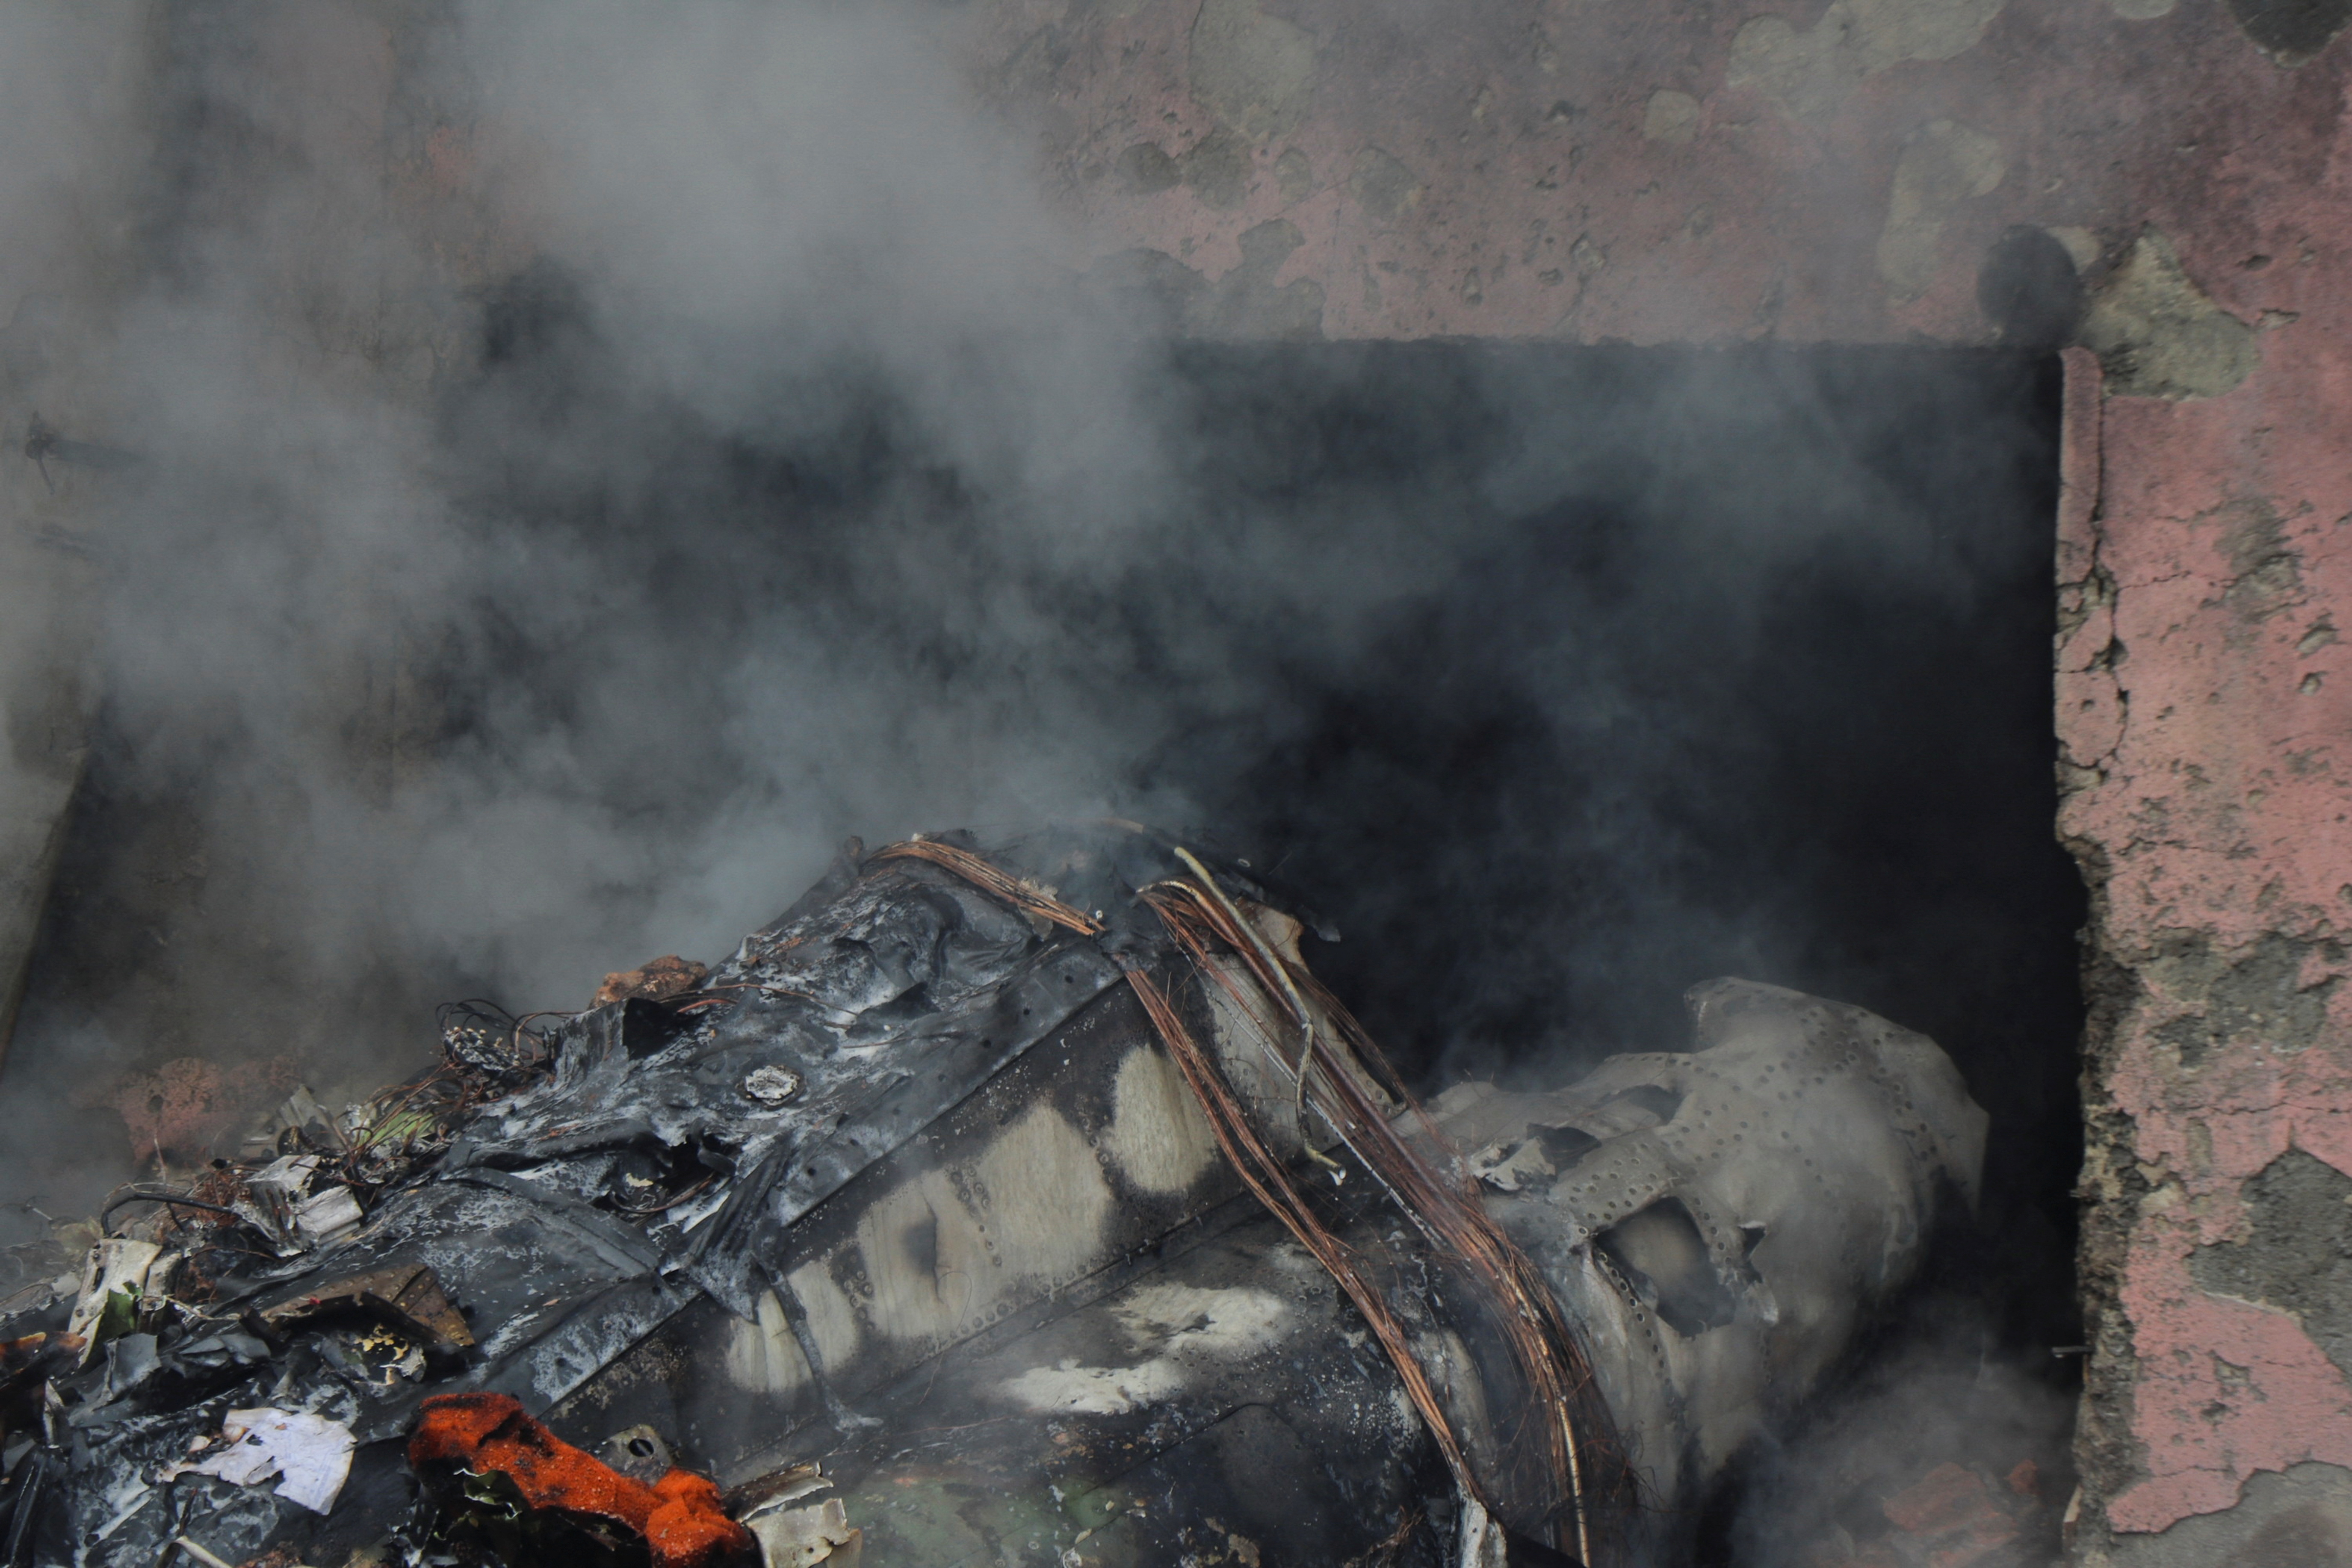 Los restos del avión en el lugar del accidente (Mehr News/WANA/ REUTERS)